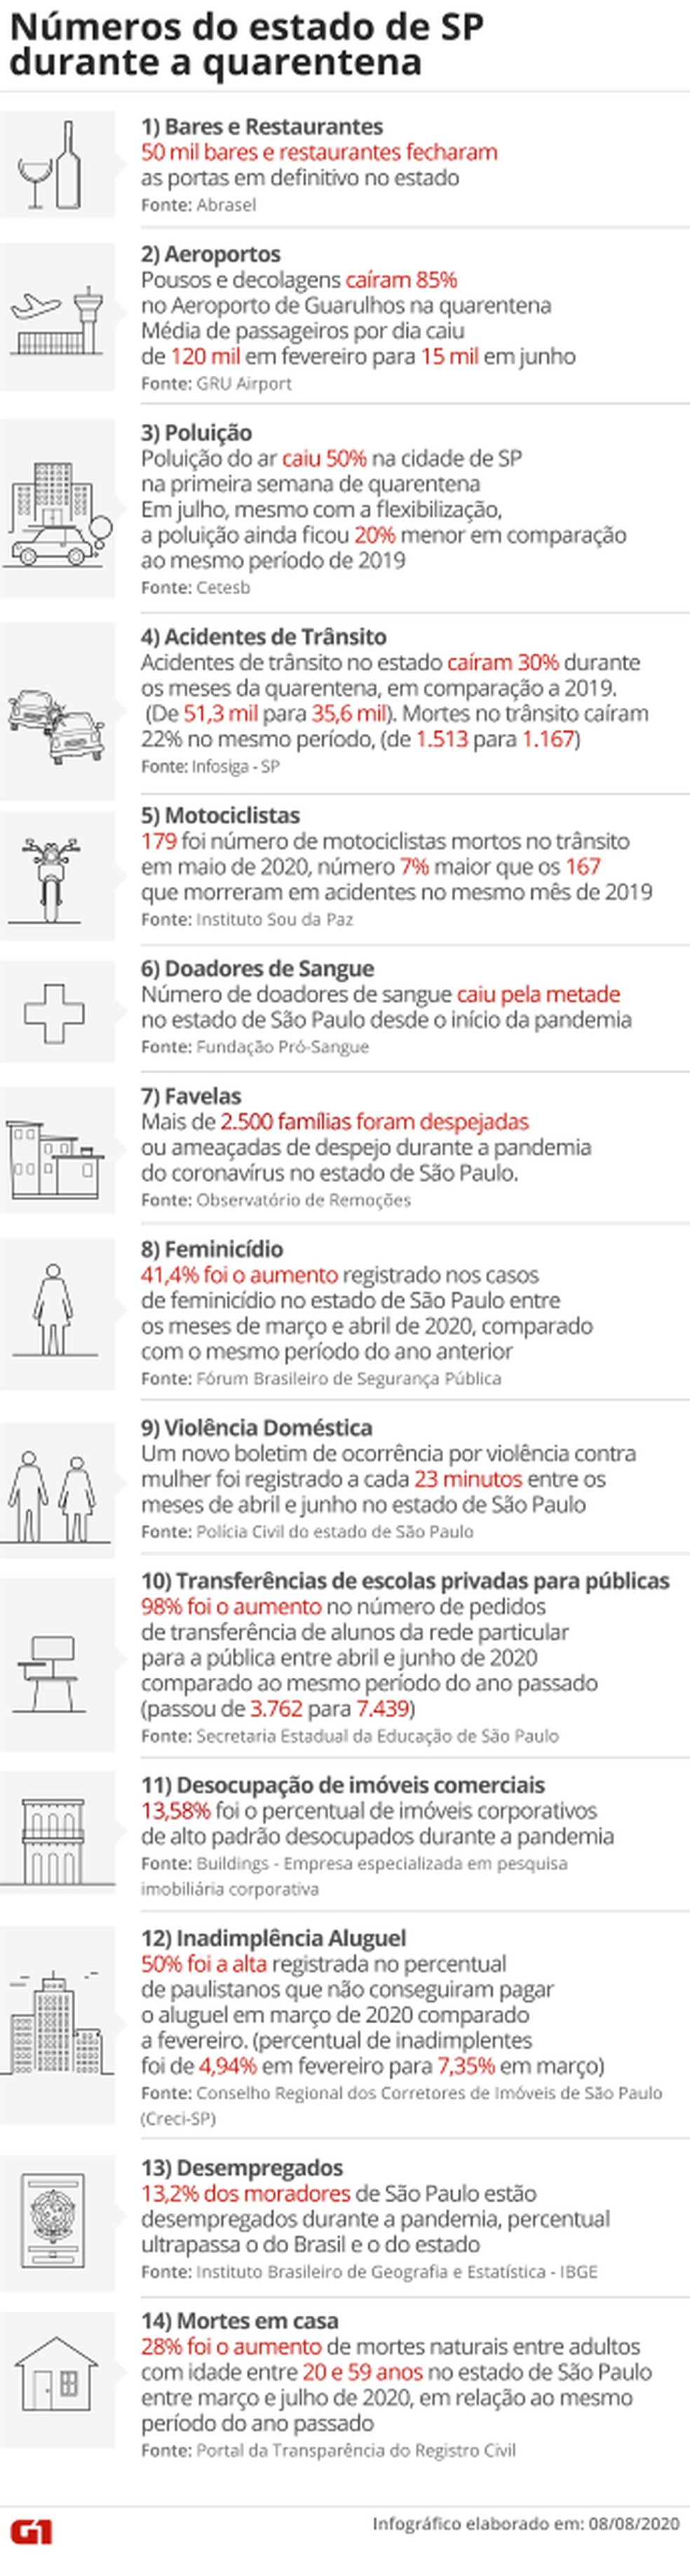 Dados do estado e da cidade de São Paulo durante a quarentena. — Foto: Arte/G1